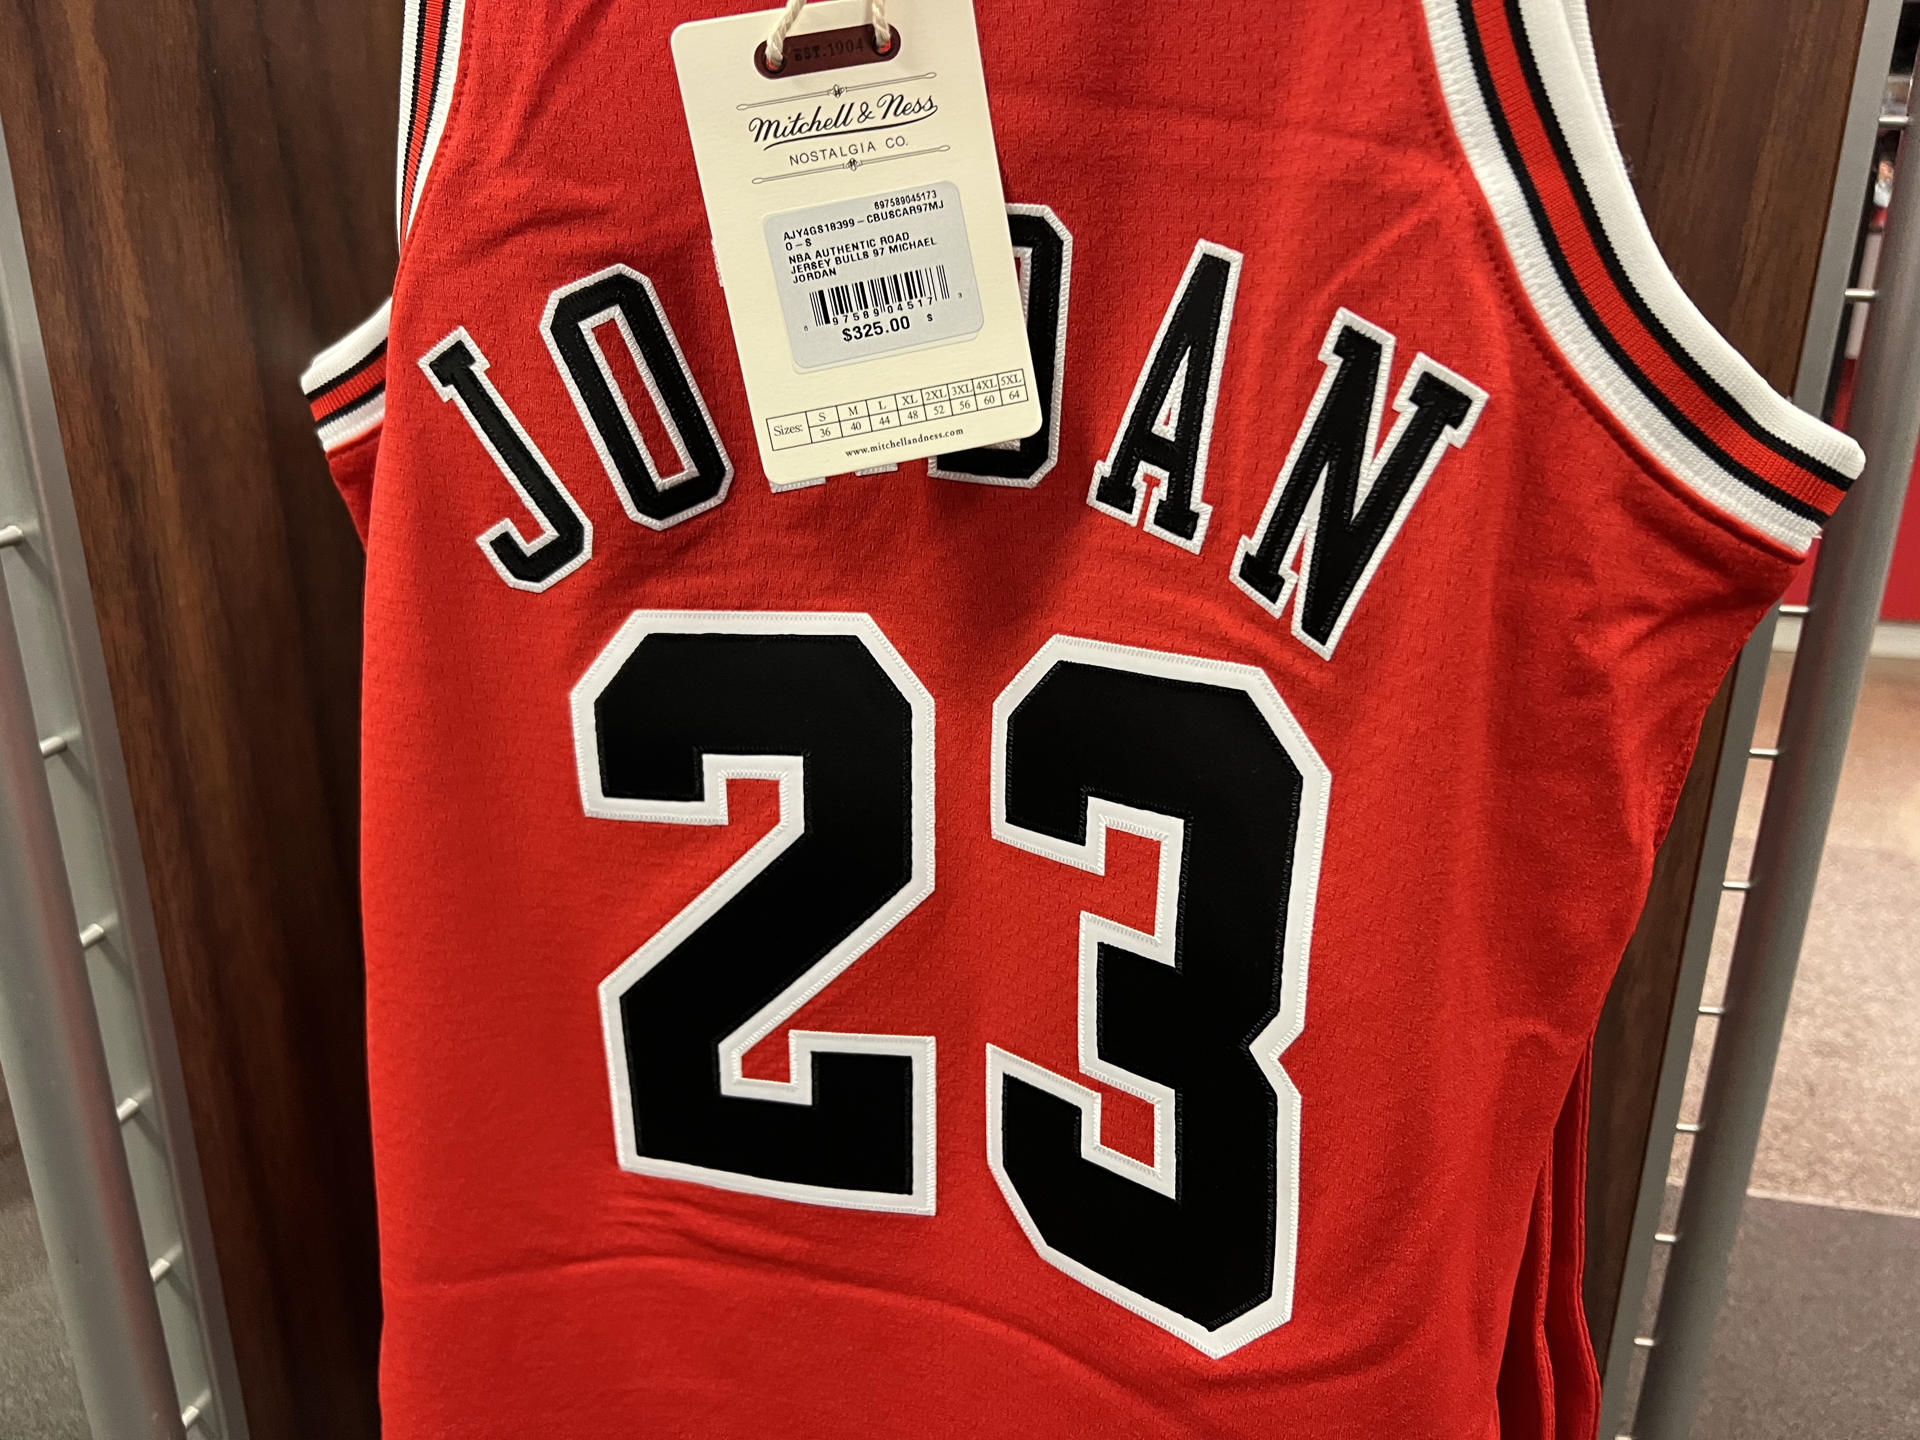 Fotografía de unas camiseta de Michael Jordan como jugador de los Chicago Bulls.EFE/Andrea Montolivo